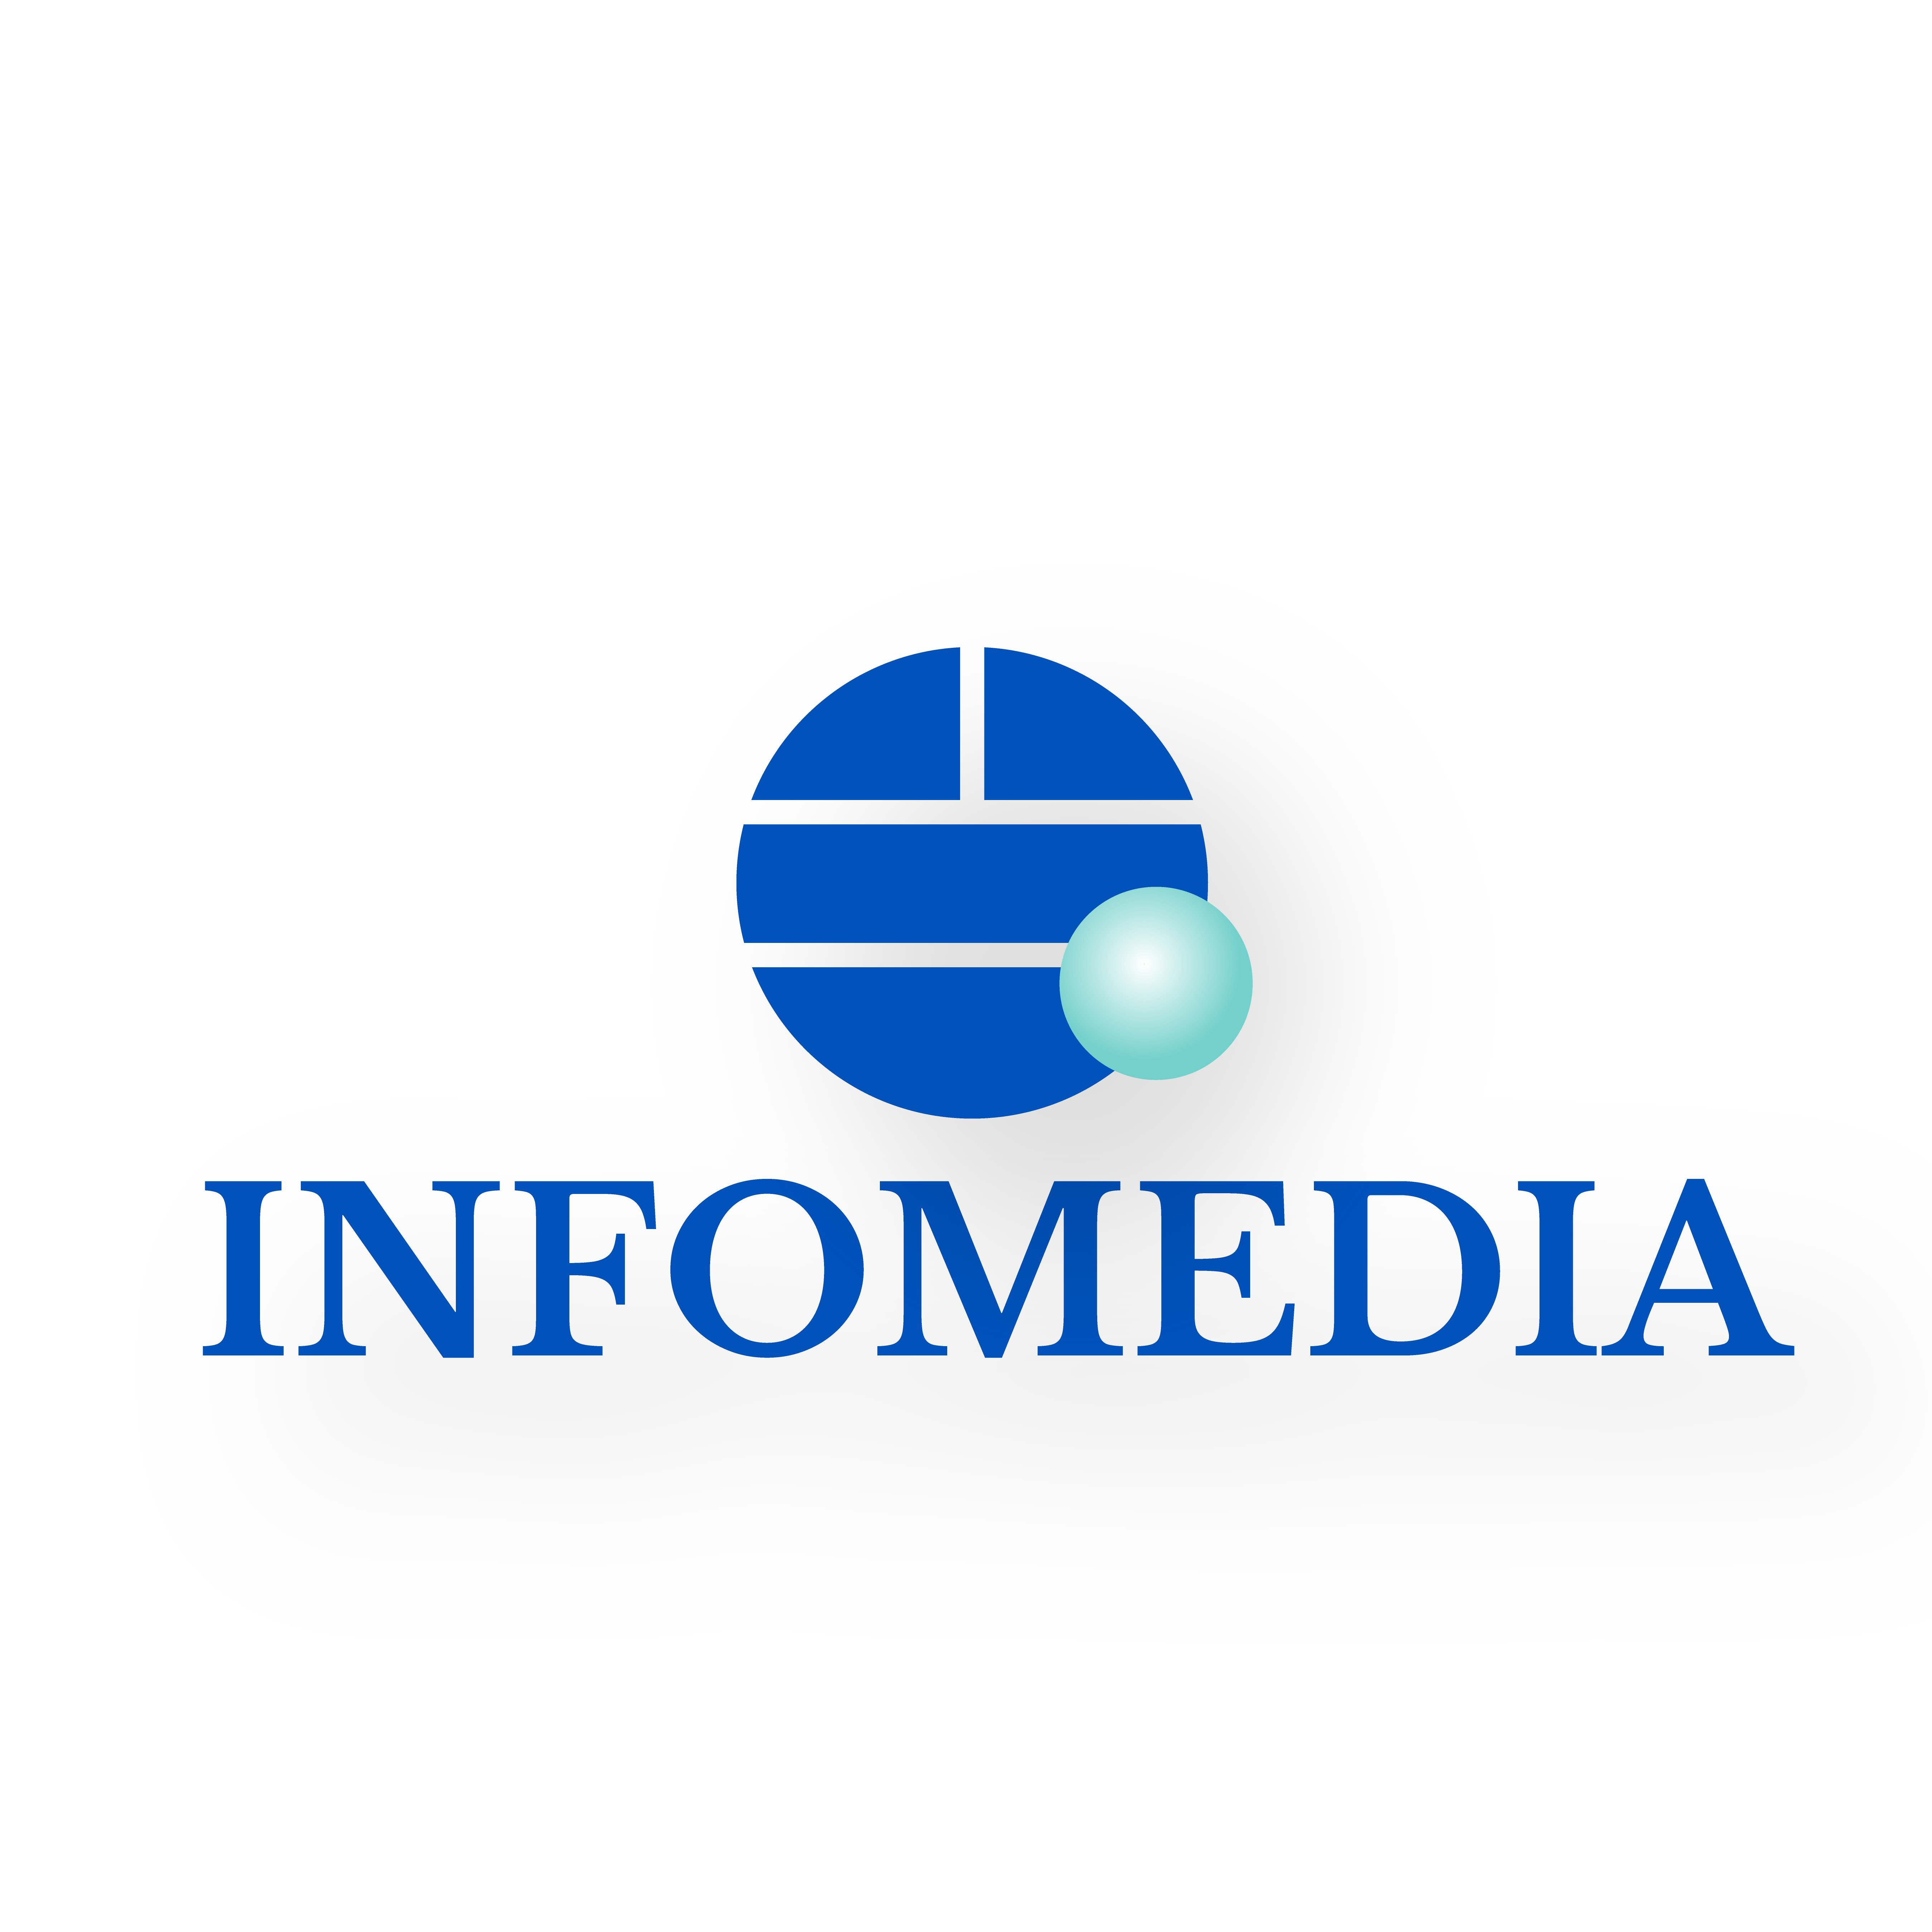 Logo infomedia original